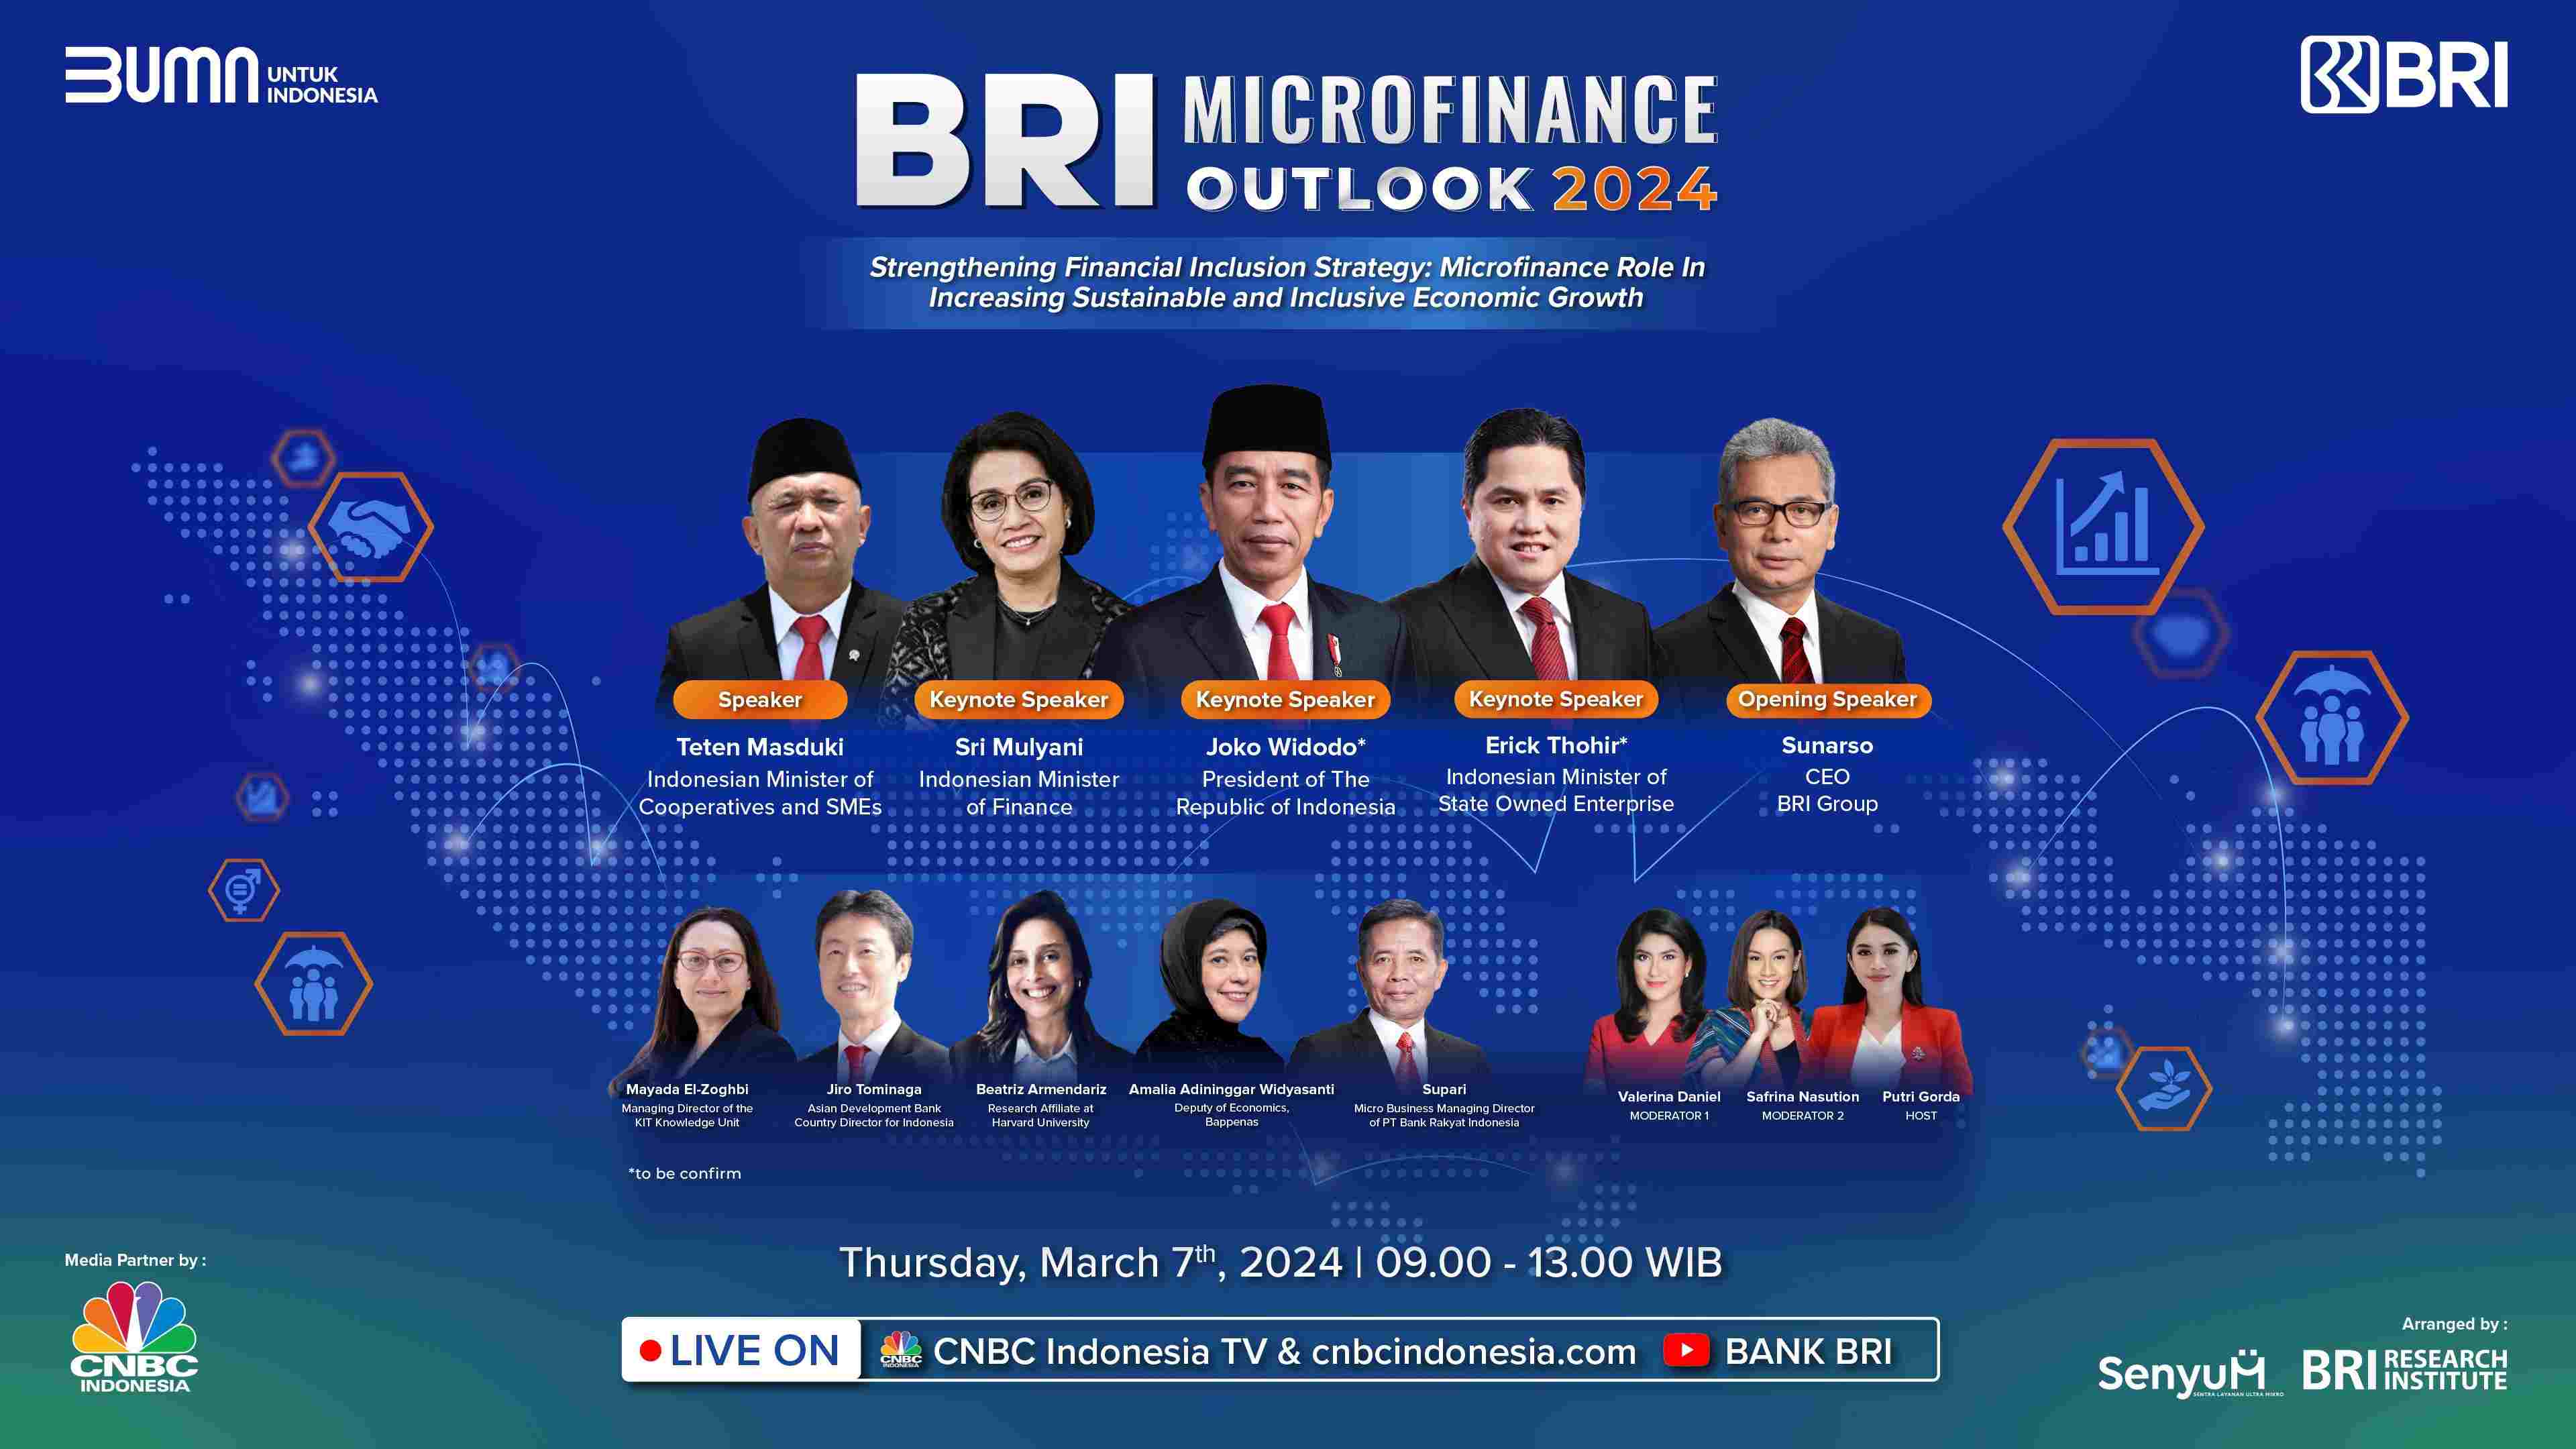 BRI Microfinance Outlook 2024 Angkat Strategi Memperkuat Inklusi Keuangan